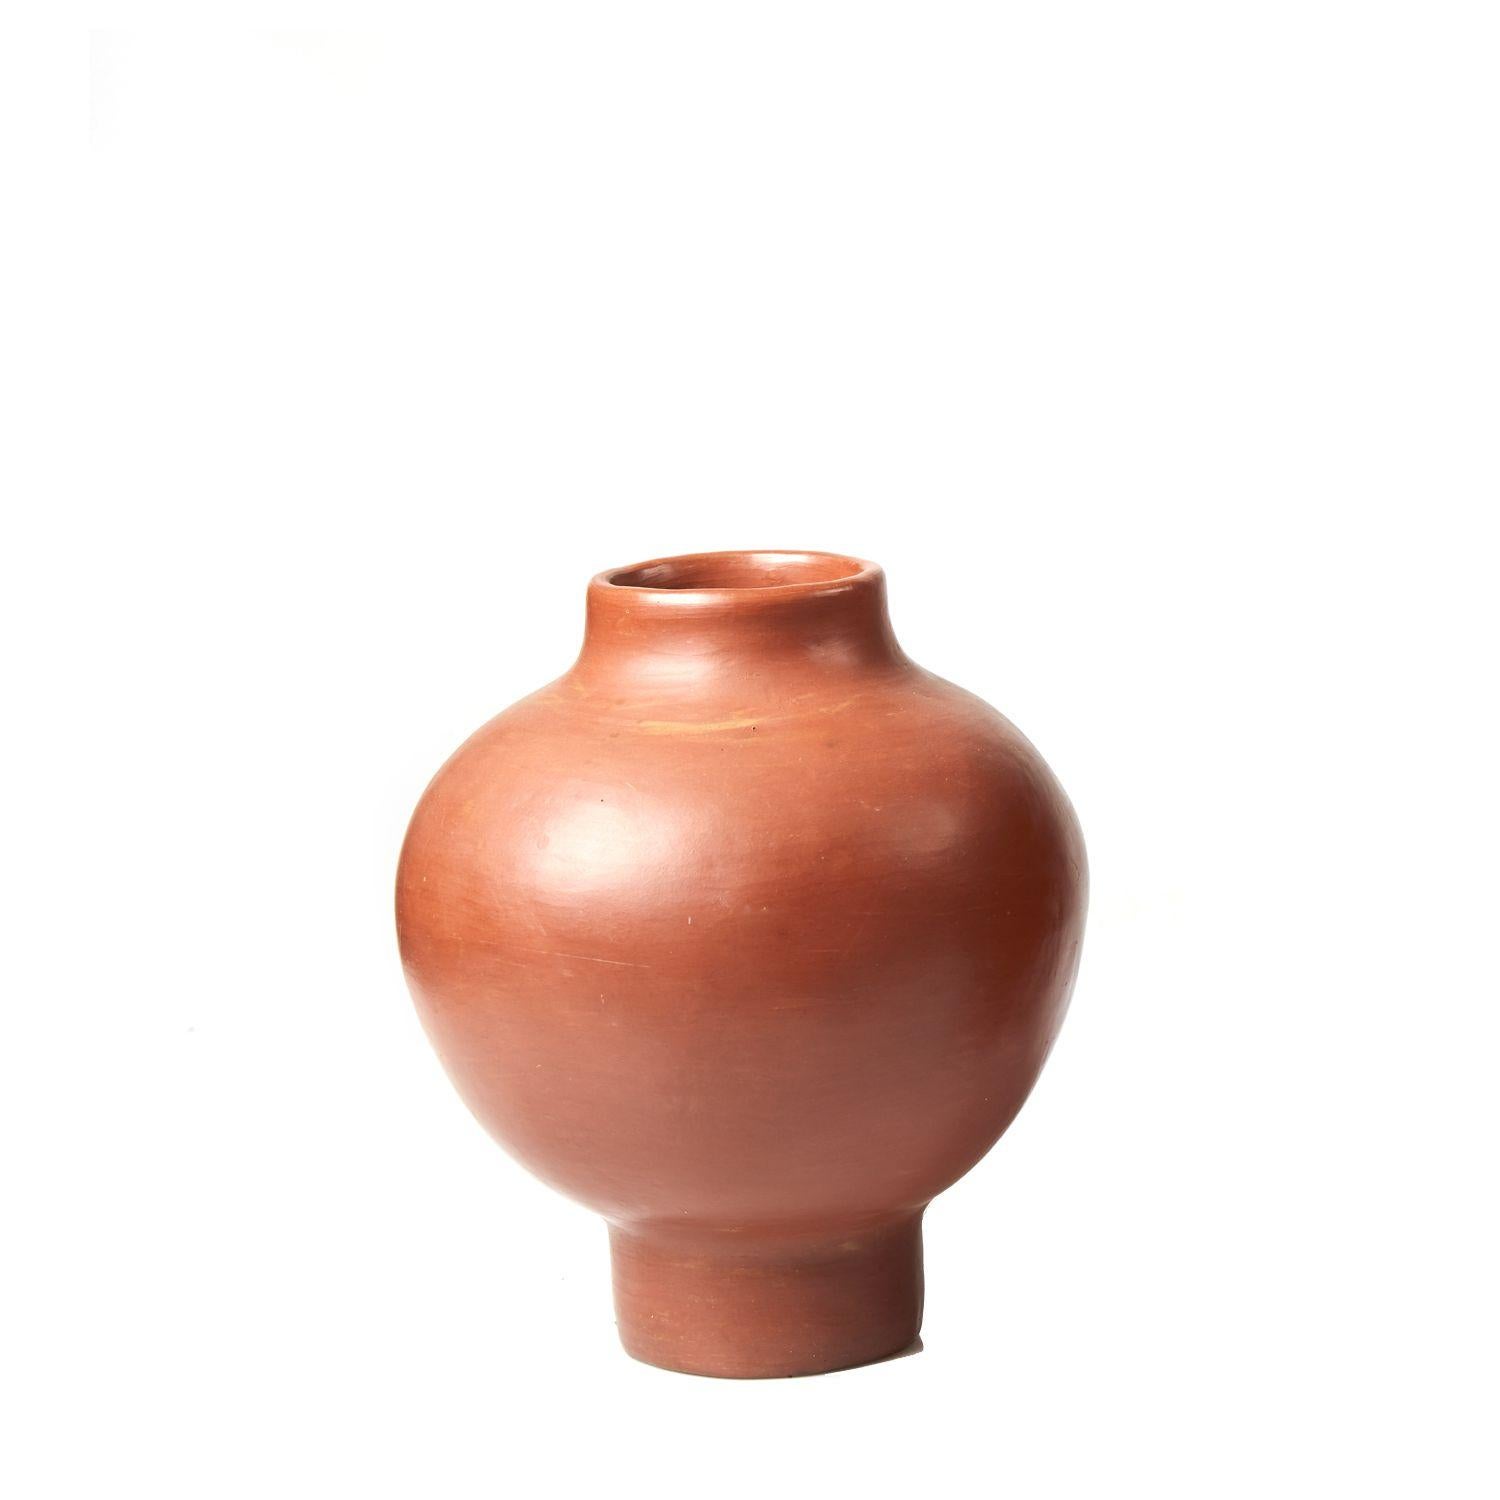 Rote kleine Vase von Sebastian Herkner
MATERIALIEN: Hitzebeständige rote Keramik. 
Technik: Glasiert. Im Ofen gegart und mit Halbedelsteinen poliert. 
Abmessungen: Durchmesser 23 cm x Höhe 28 cm 
Erhältlich in den Größen Large und Mini.